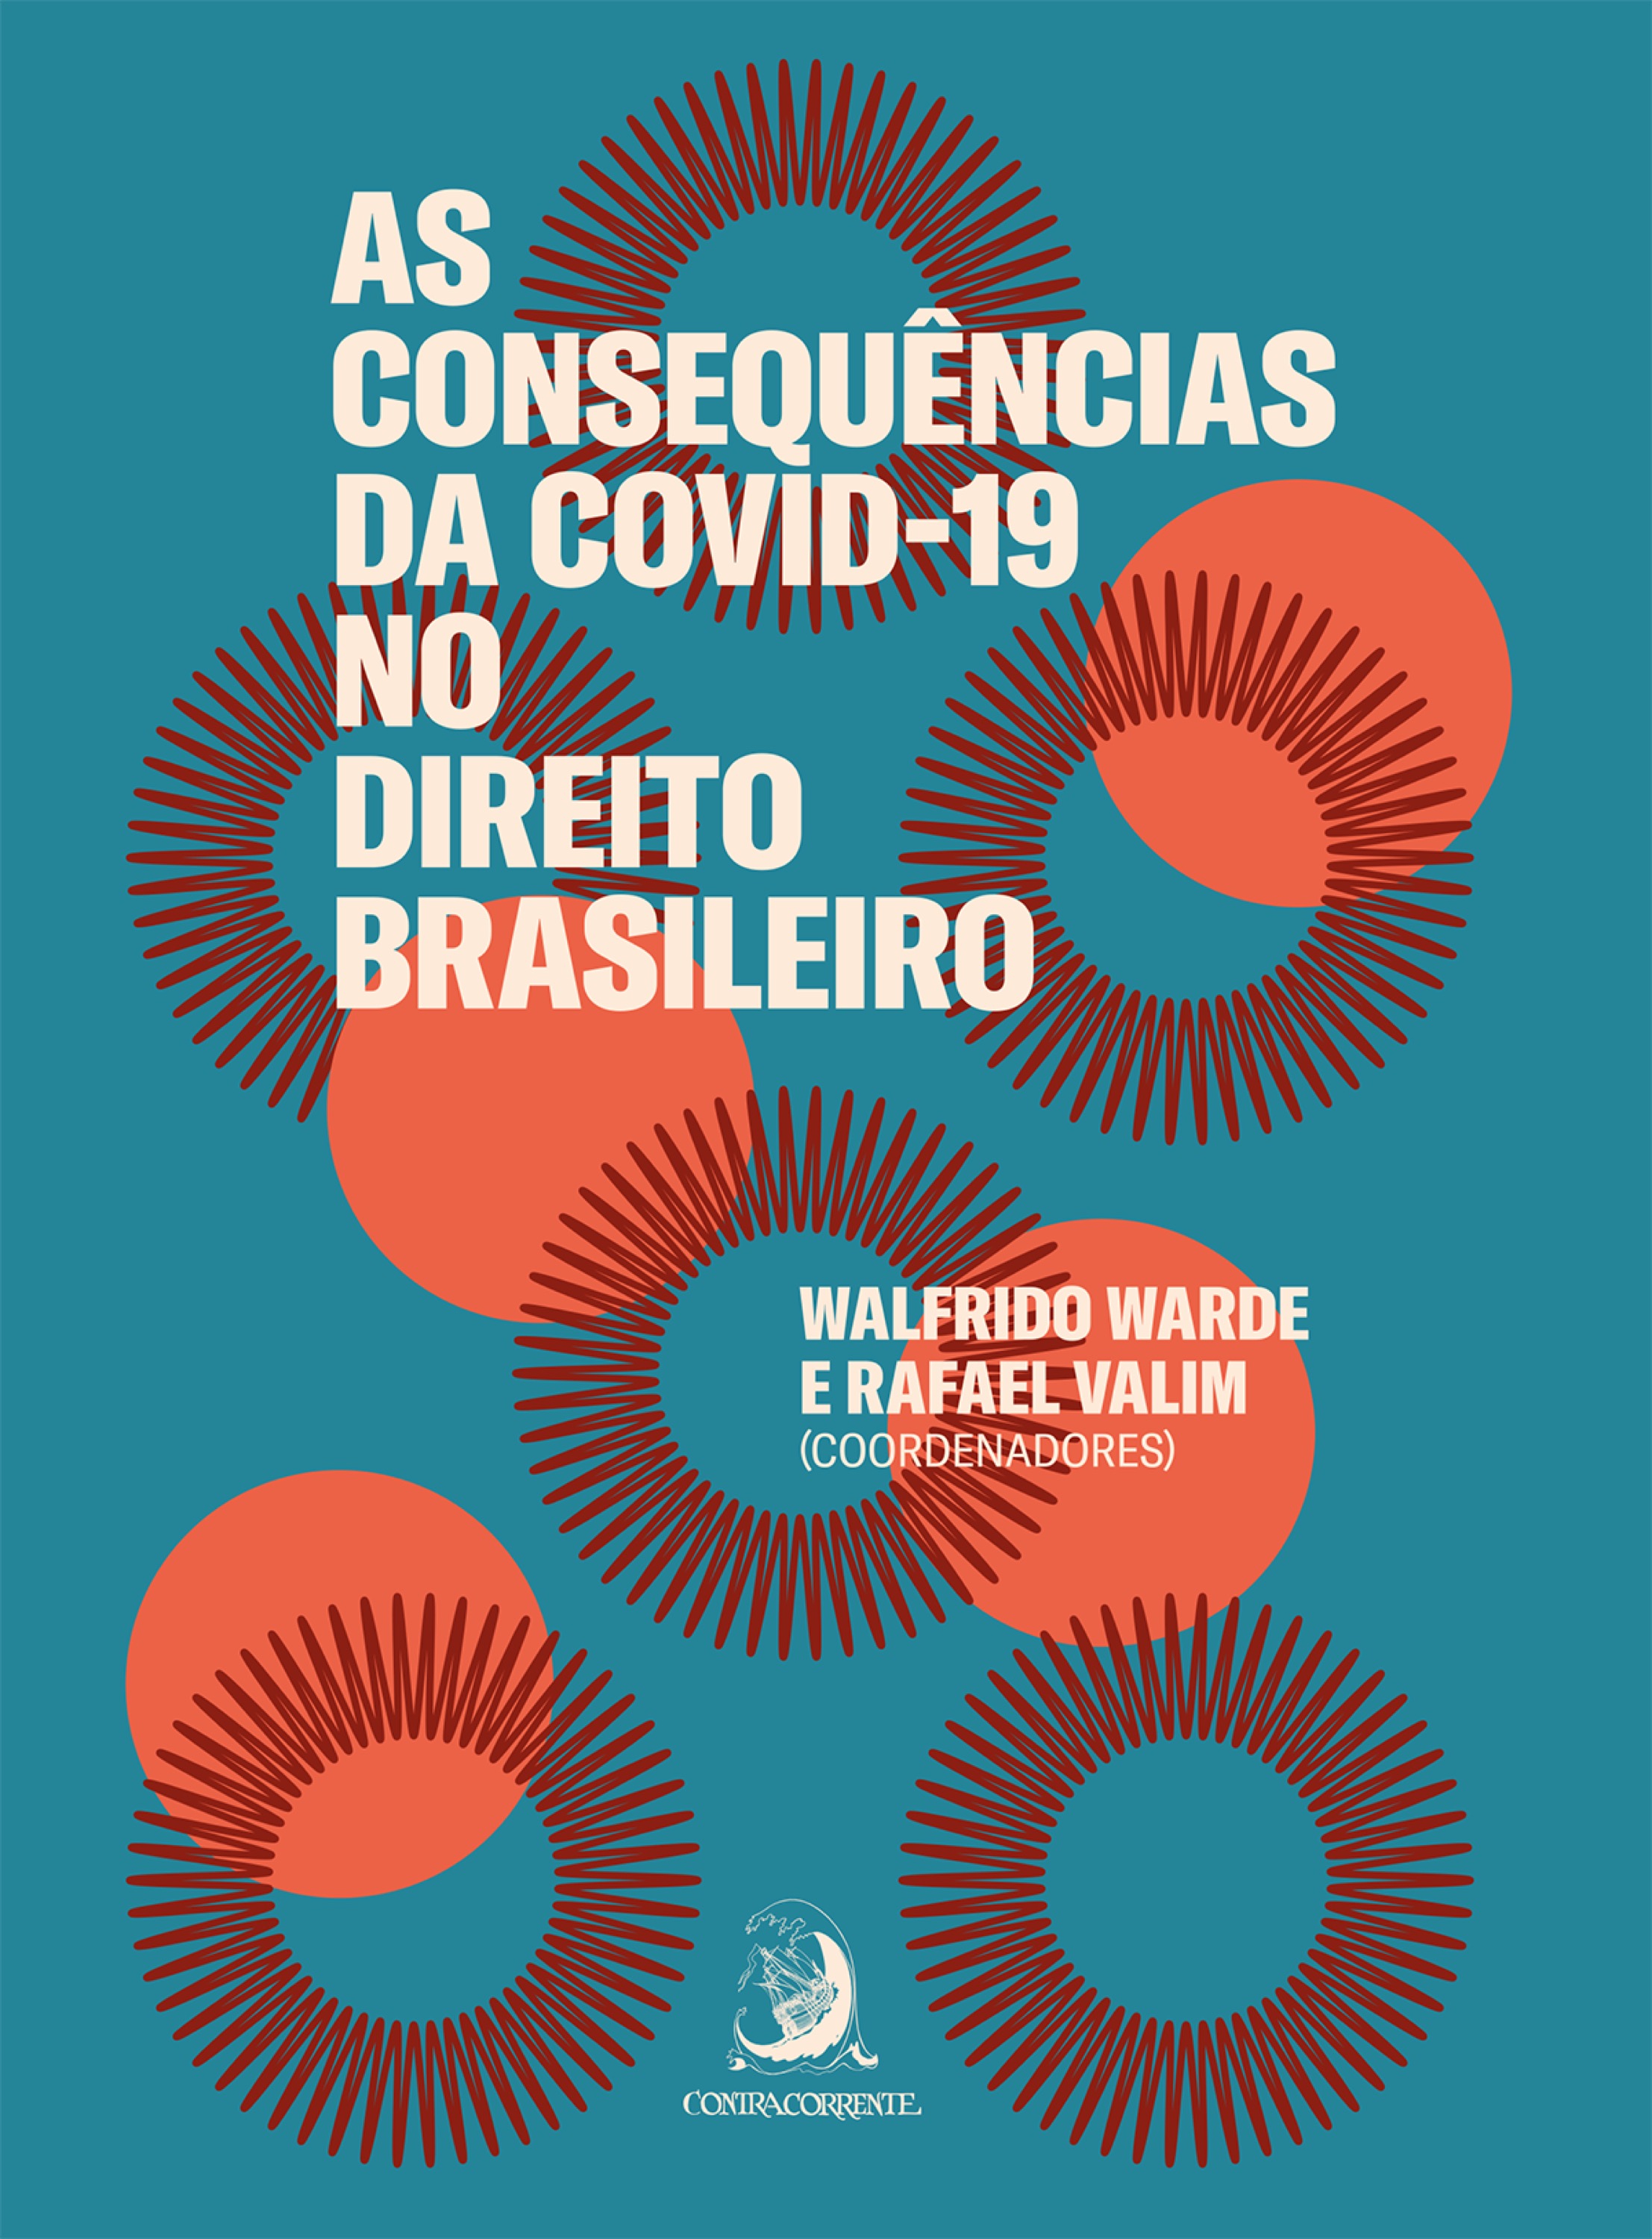 As consequências da COVID-19 no direito brasileiro